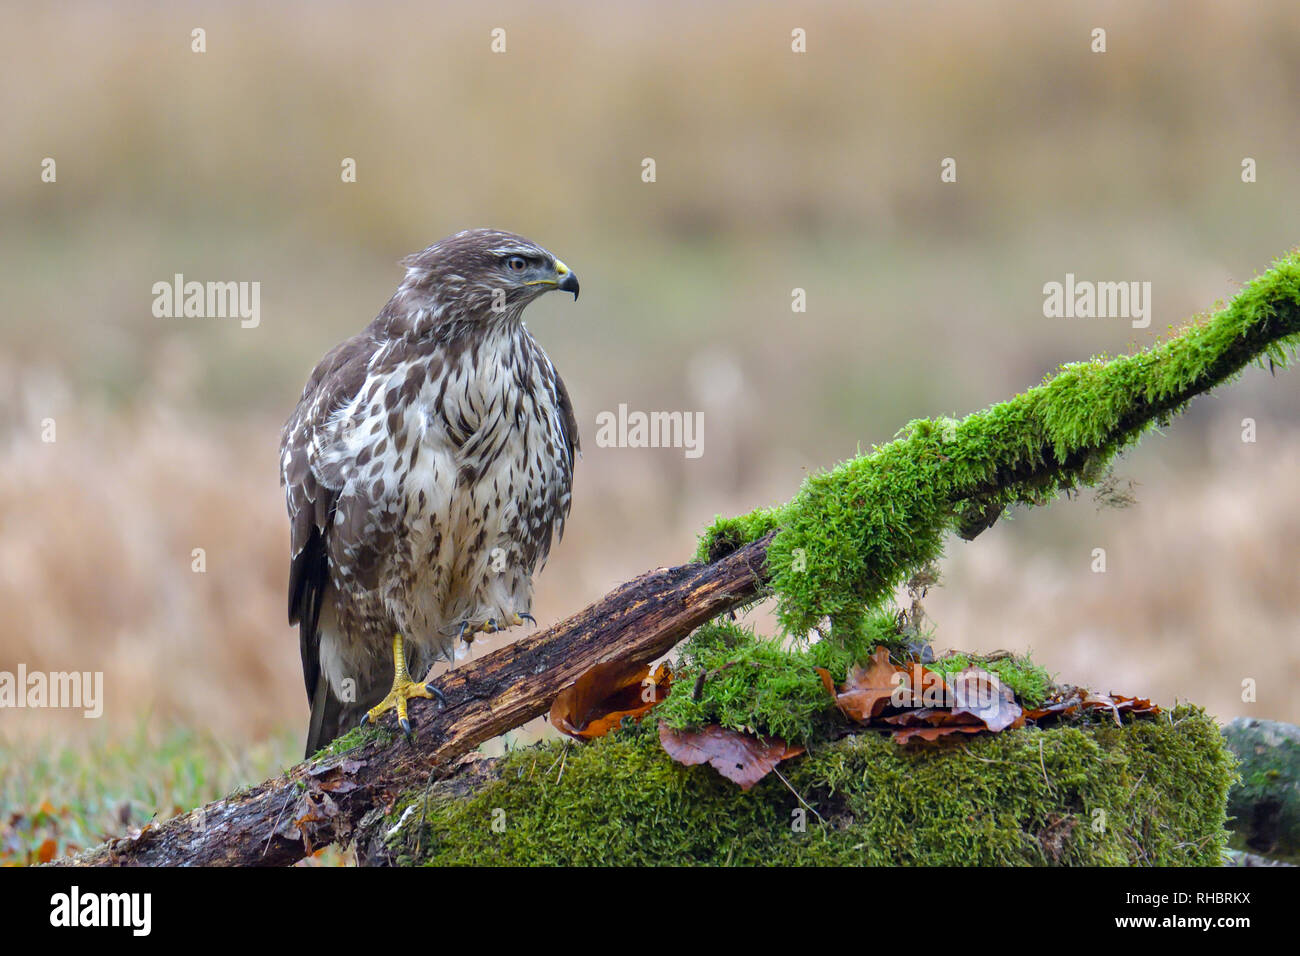 Common buzzard, bird of prey Stock Photo